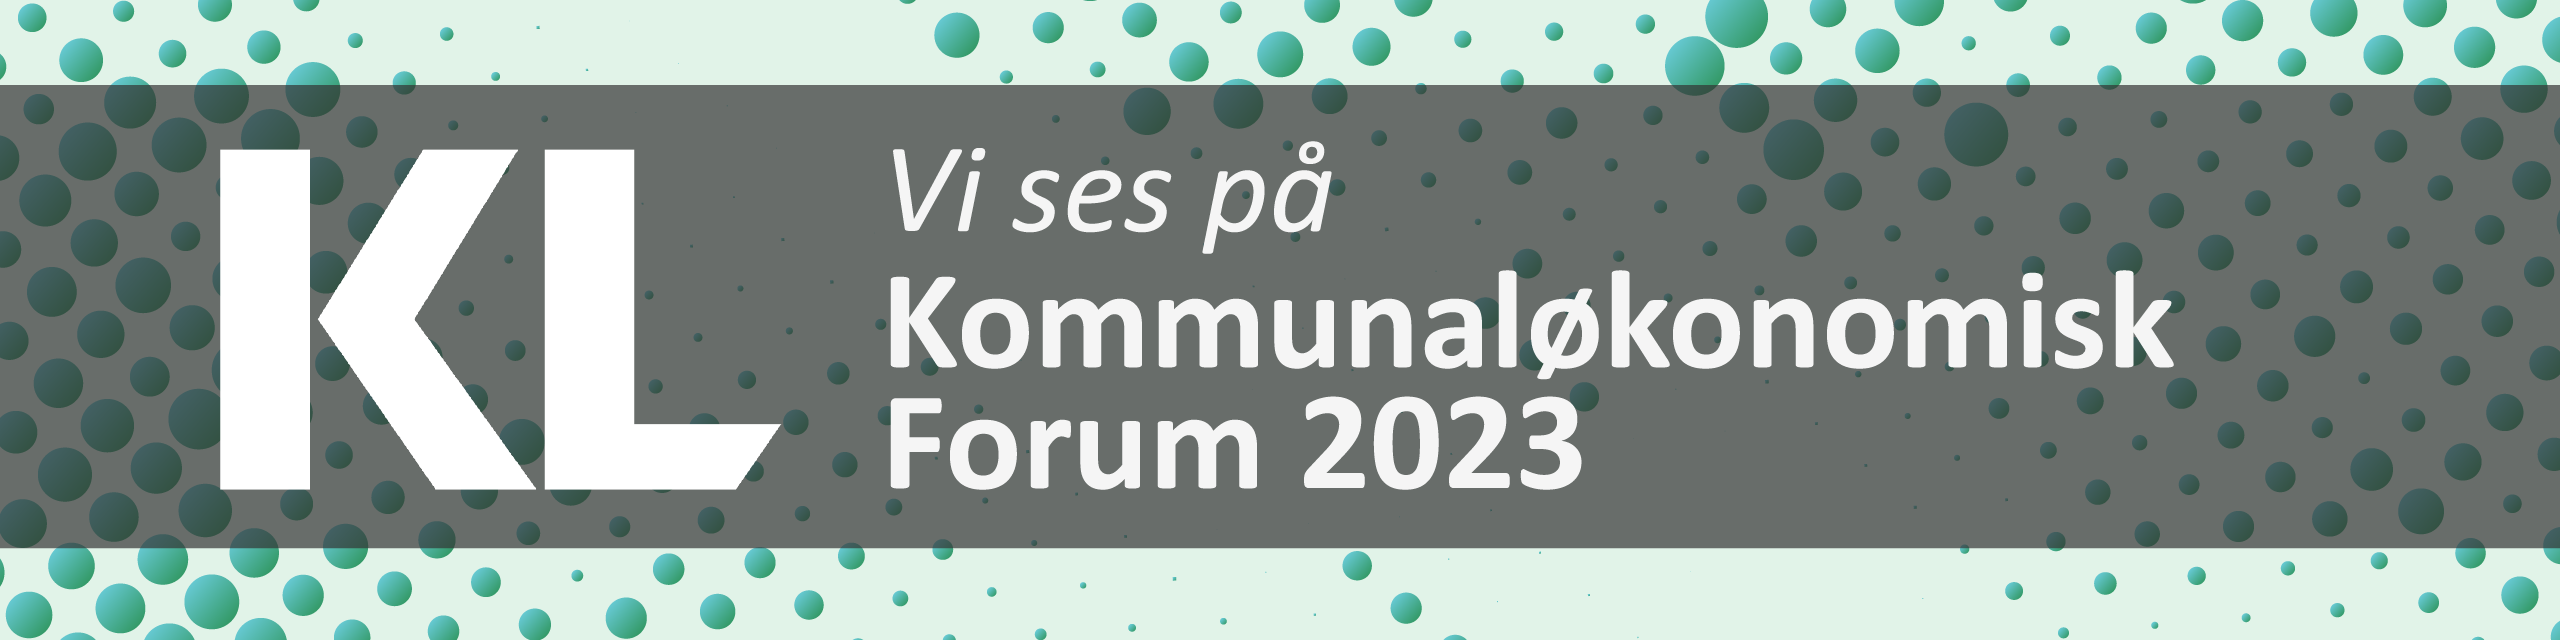 Mød os på årets Kommunaløkonomiske Forum 2023